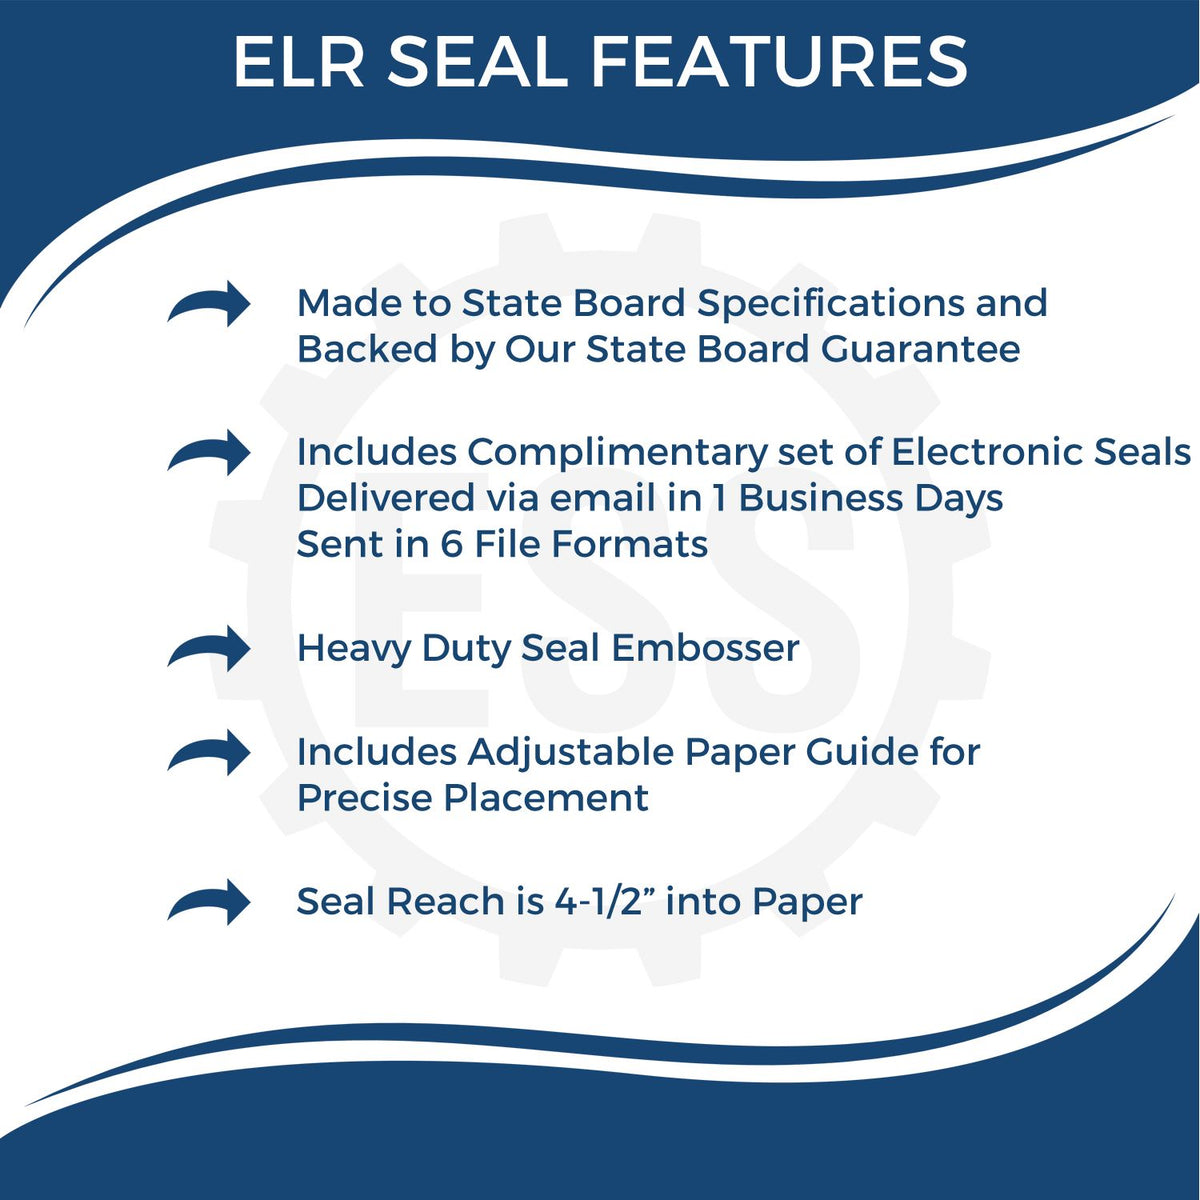 Real Estate Appraiser Extended Long Reach Desk Seal Embosser